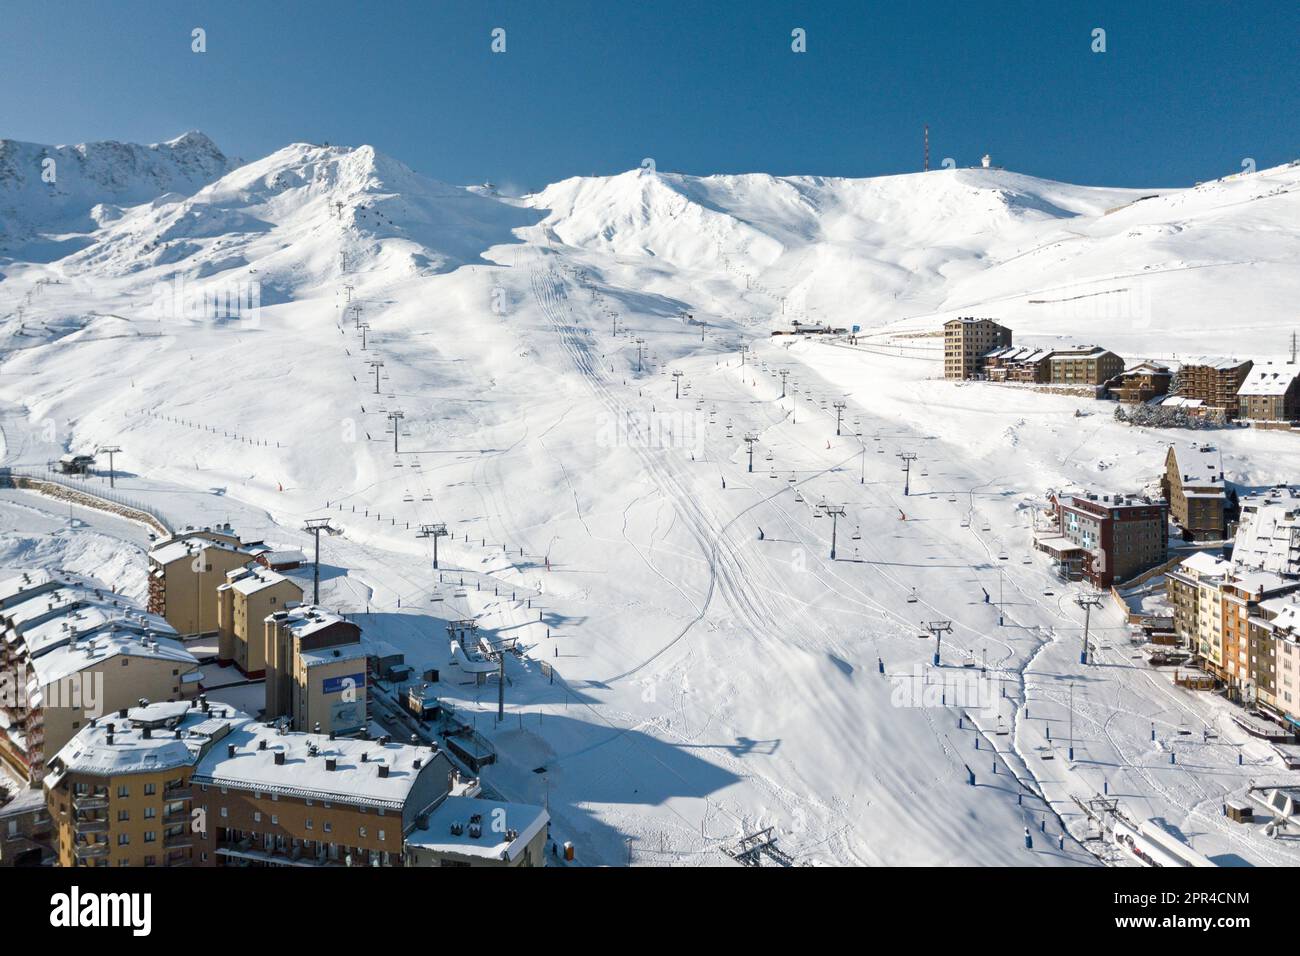 Pas de la Casa, Andorra - 15 2019. November: Die Skilifte auf dem Weg zum Gipfel der schneebedeckten Berge von Grandvalira aus der Vogelperspektive. Stockfoto